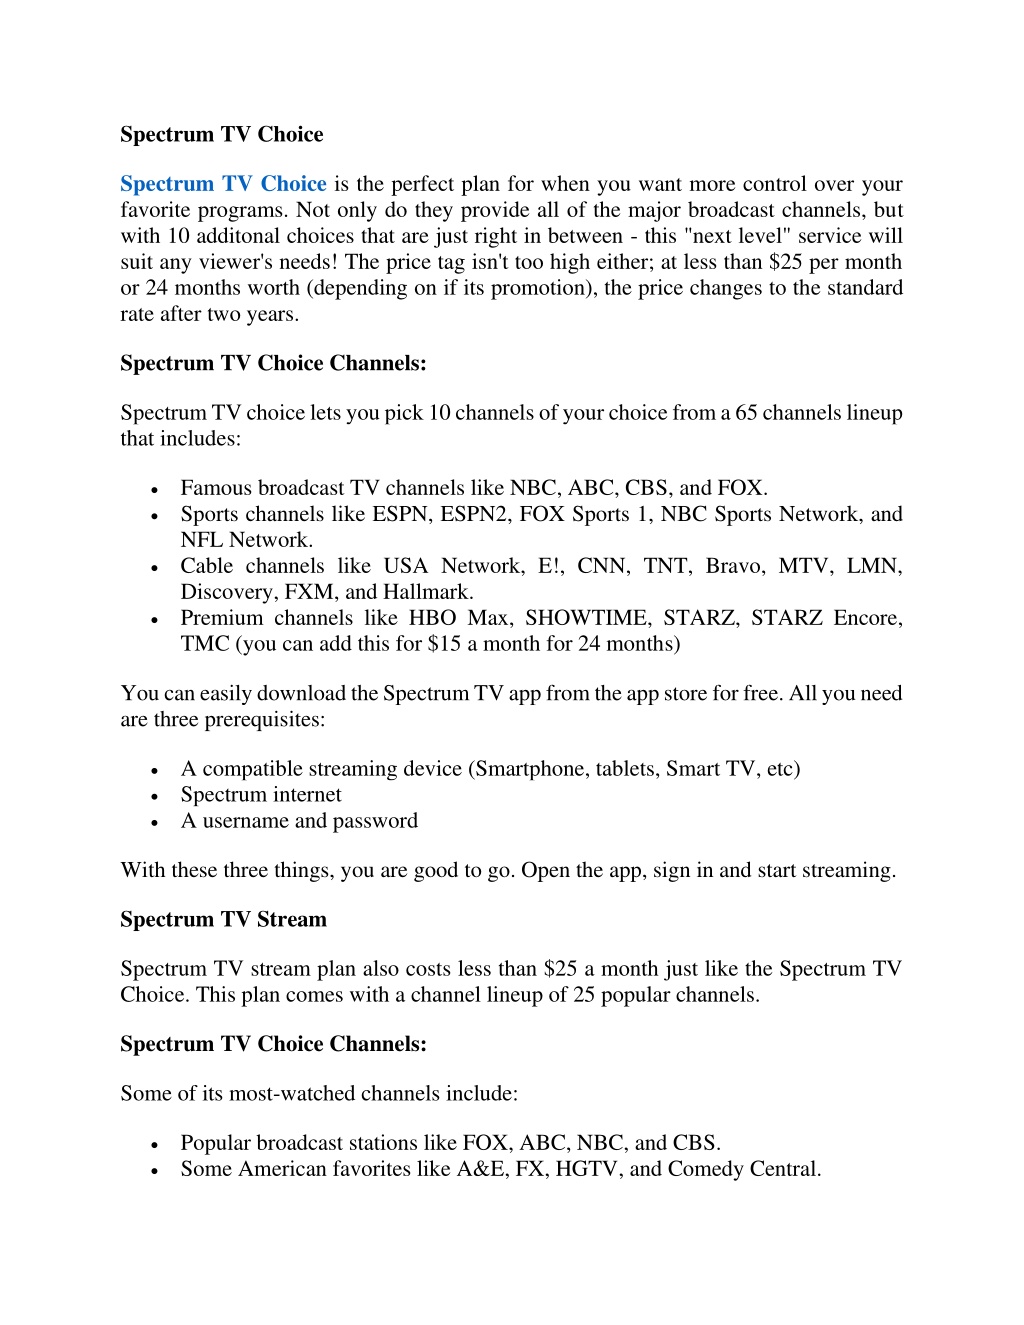 spectrum tv choice choose 10 channels